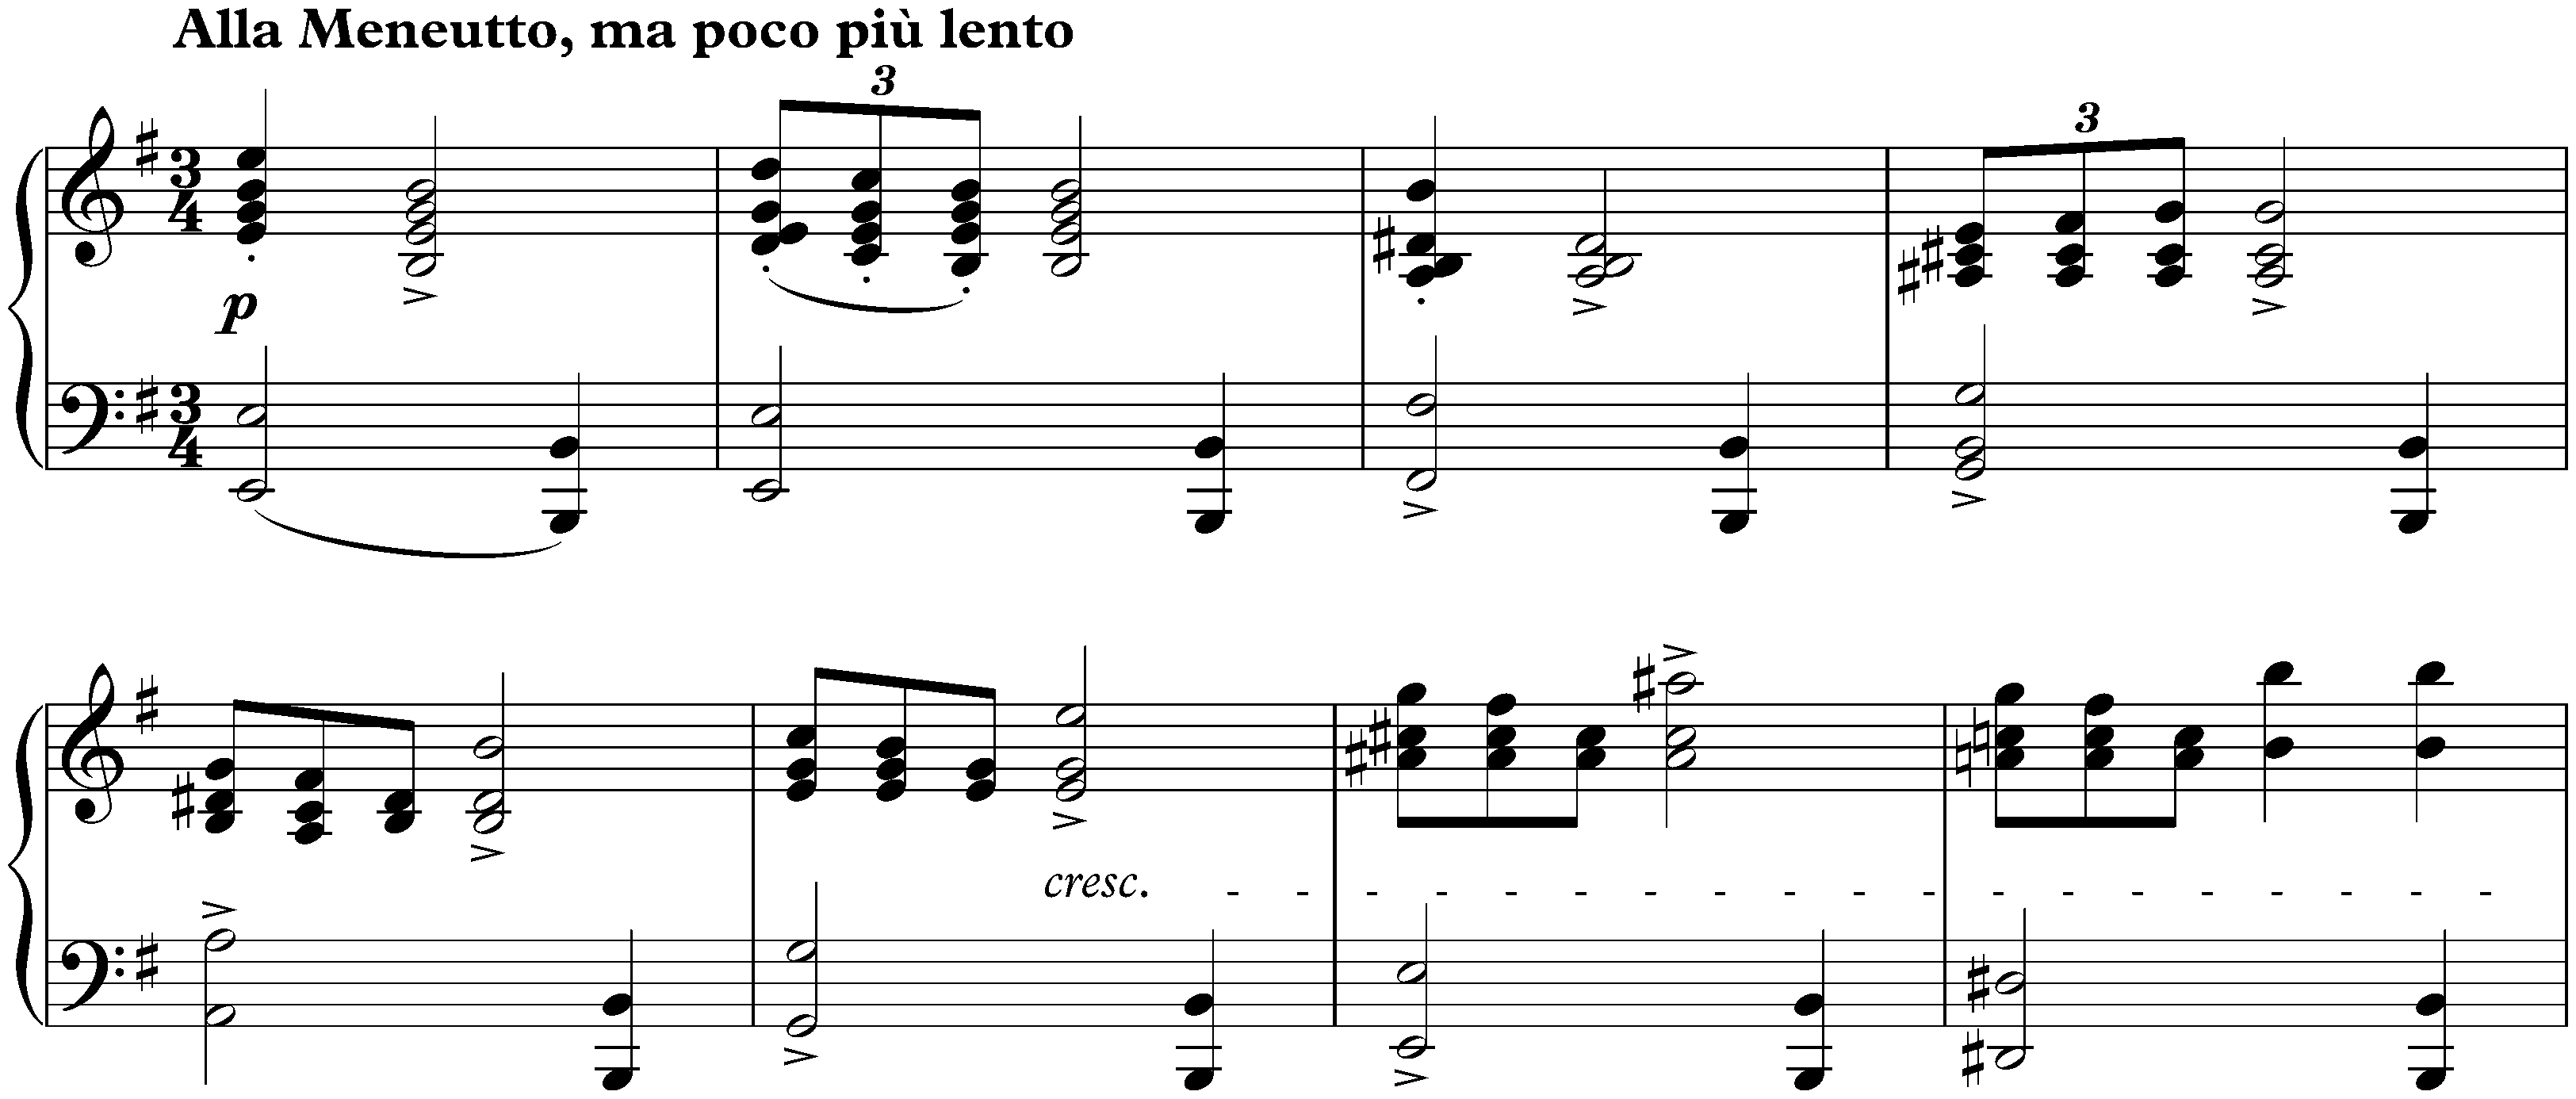 Sonata in E minor, op. 7; 3. Alla Menuetto, ma poco più lento